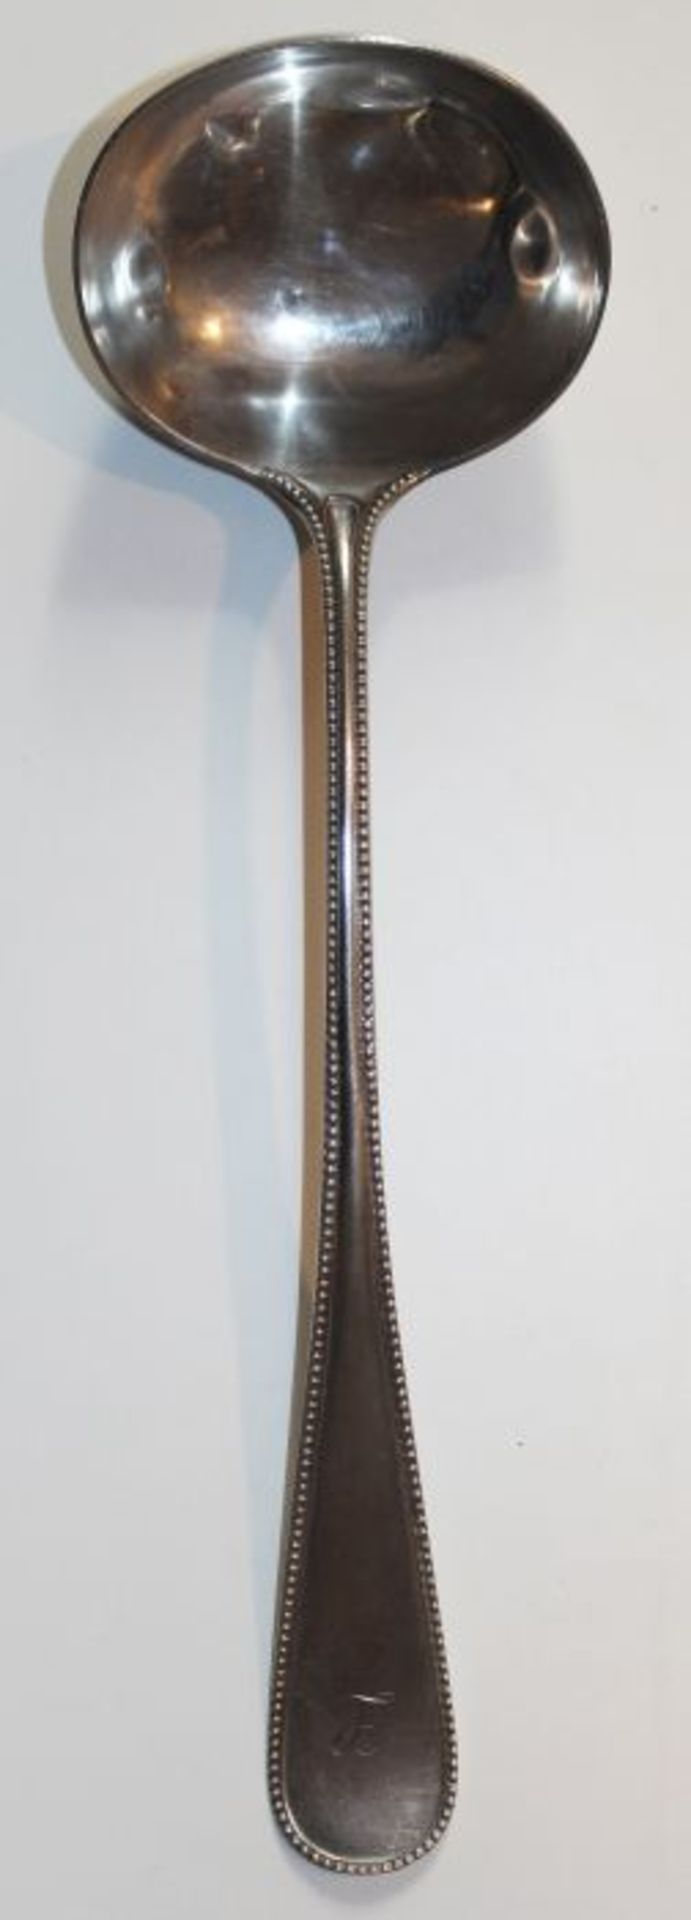 Silberne Schöpfkelle um 1900 Silber gest. 800, Perlrandmuster, Monogramm L, Länge ca. 33 cm, ca. 200